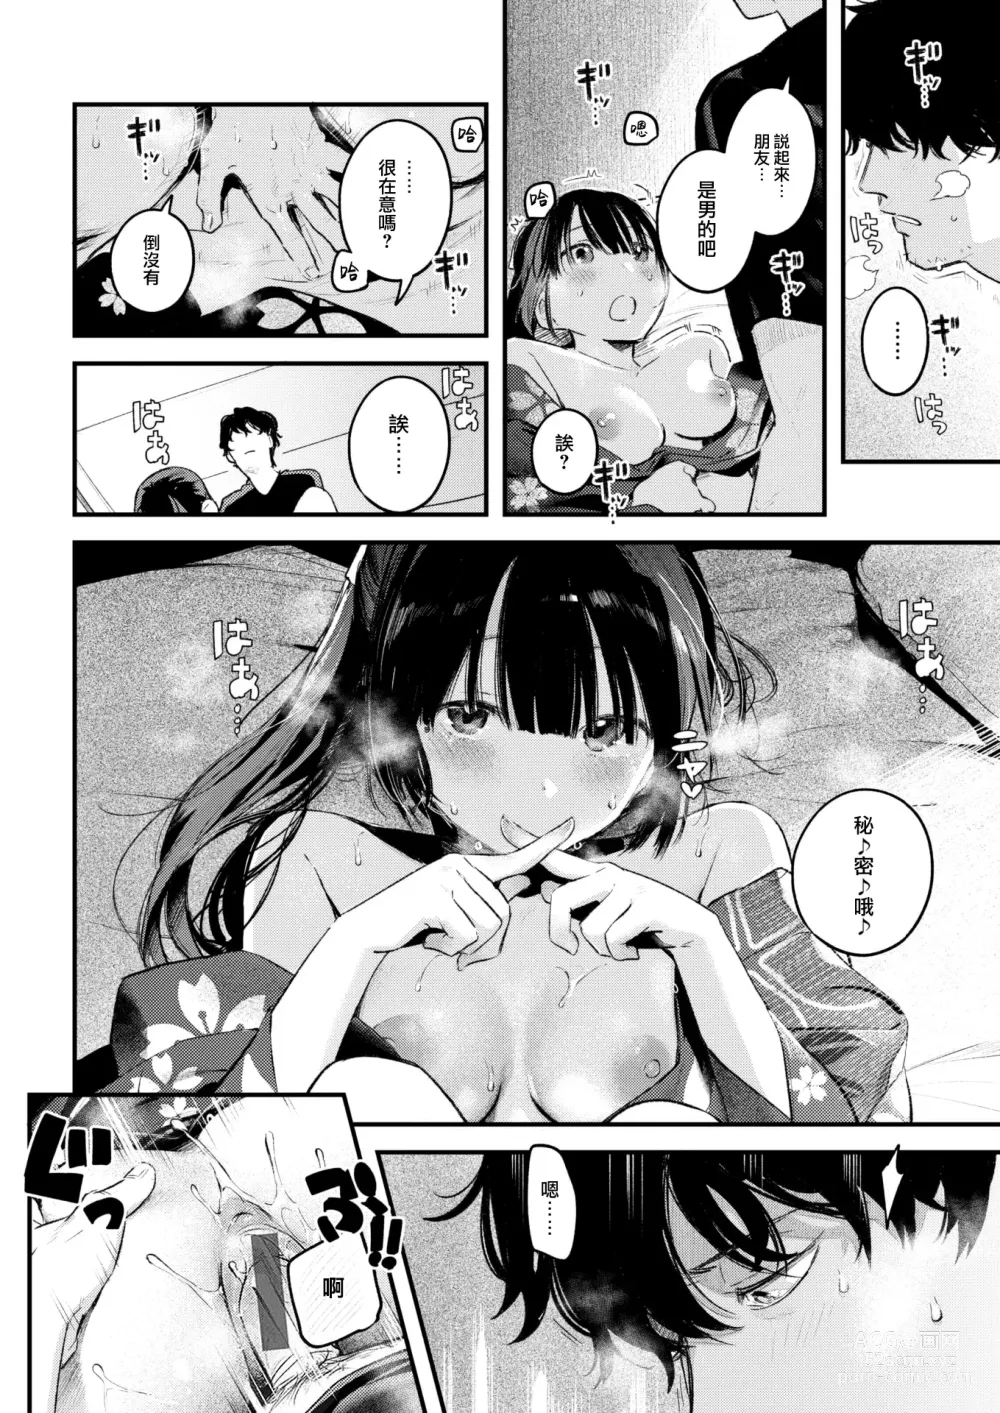 Page 23 of manga Koi no Mukidashi